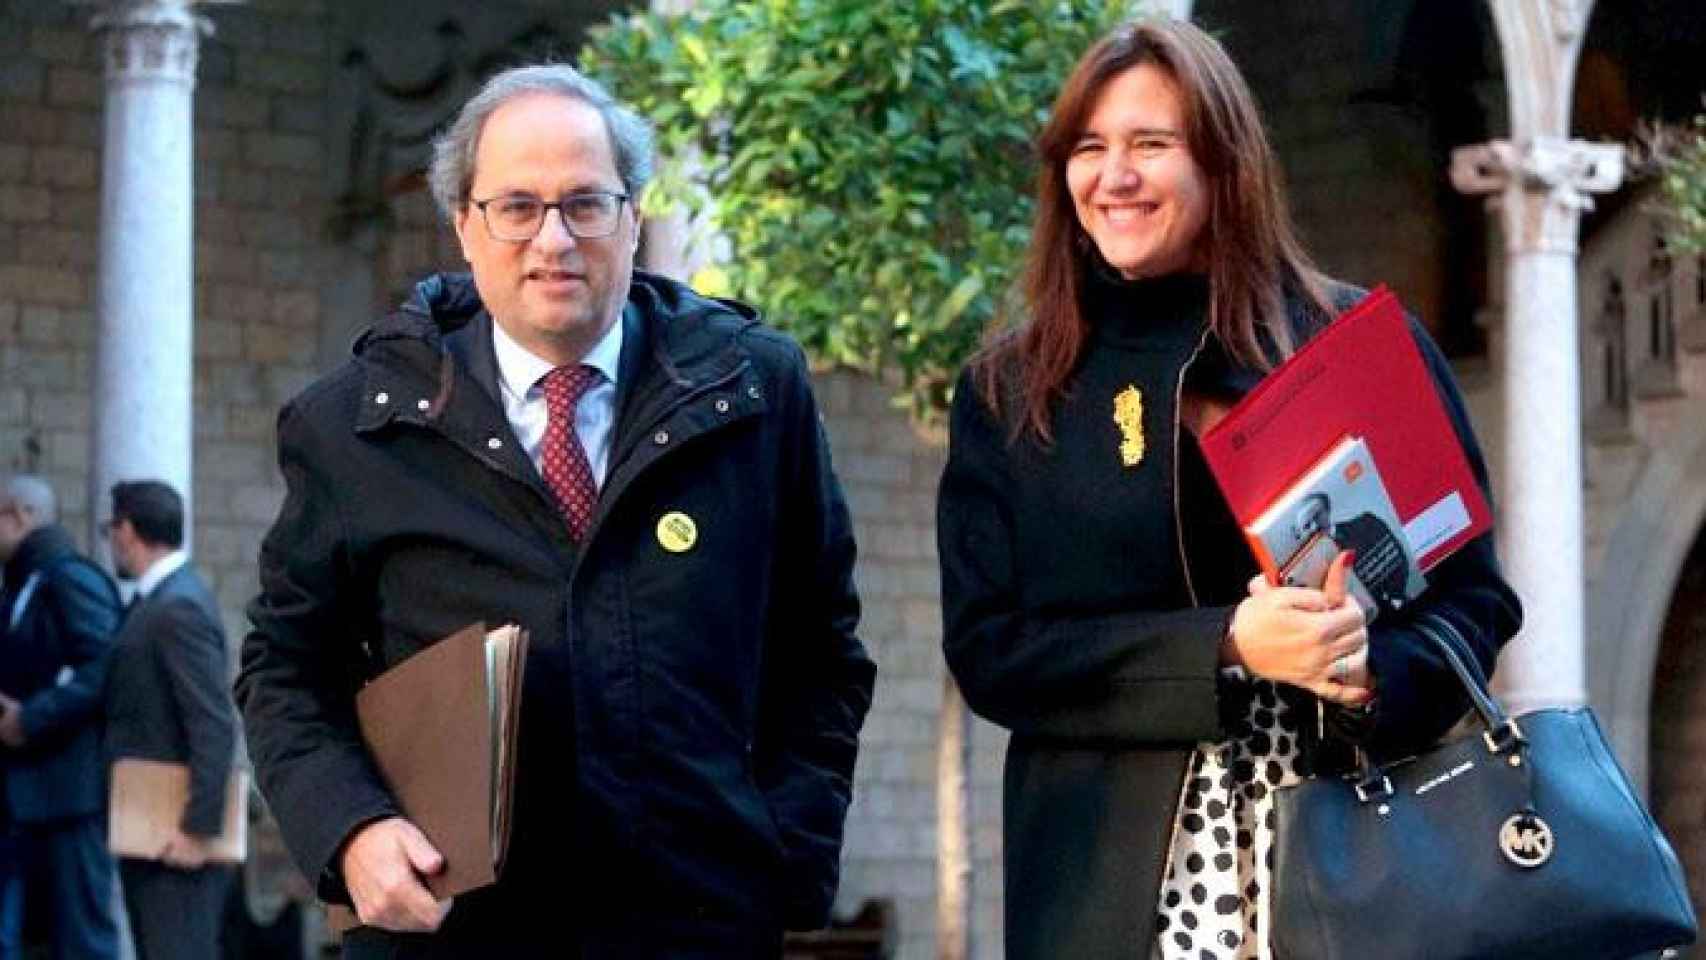 La consejera de Cultura, Laura Borràs, con el bolso de la marca Michael Kors valorado en 375 euros / TWITTER